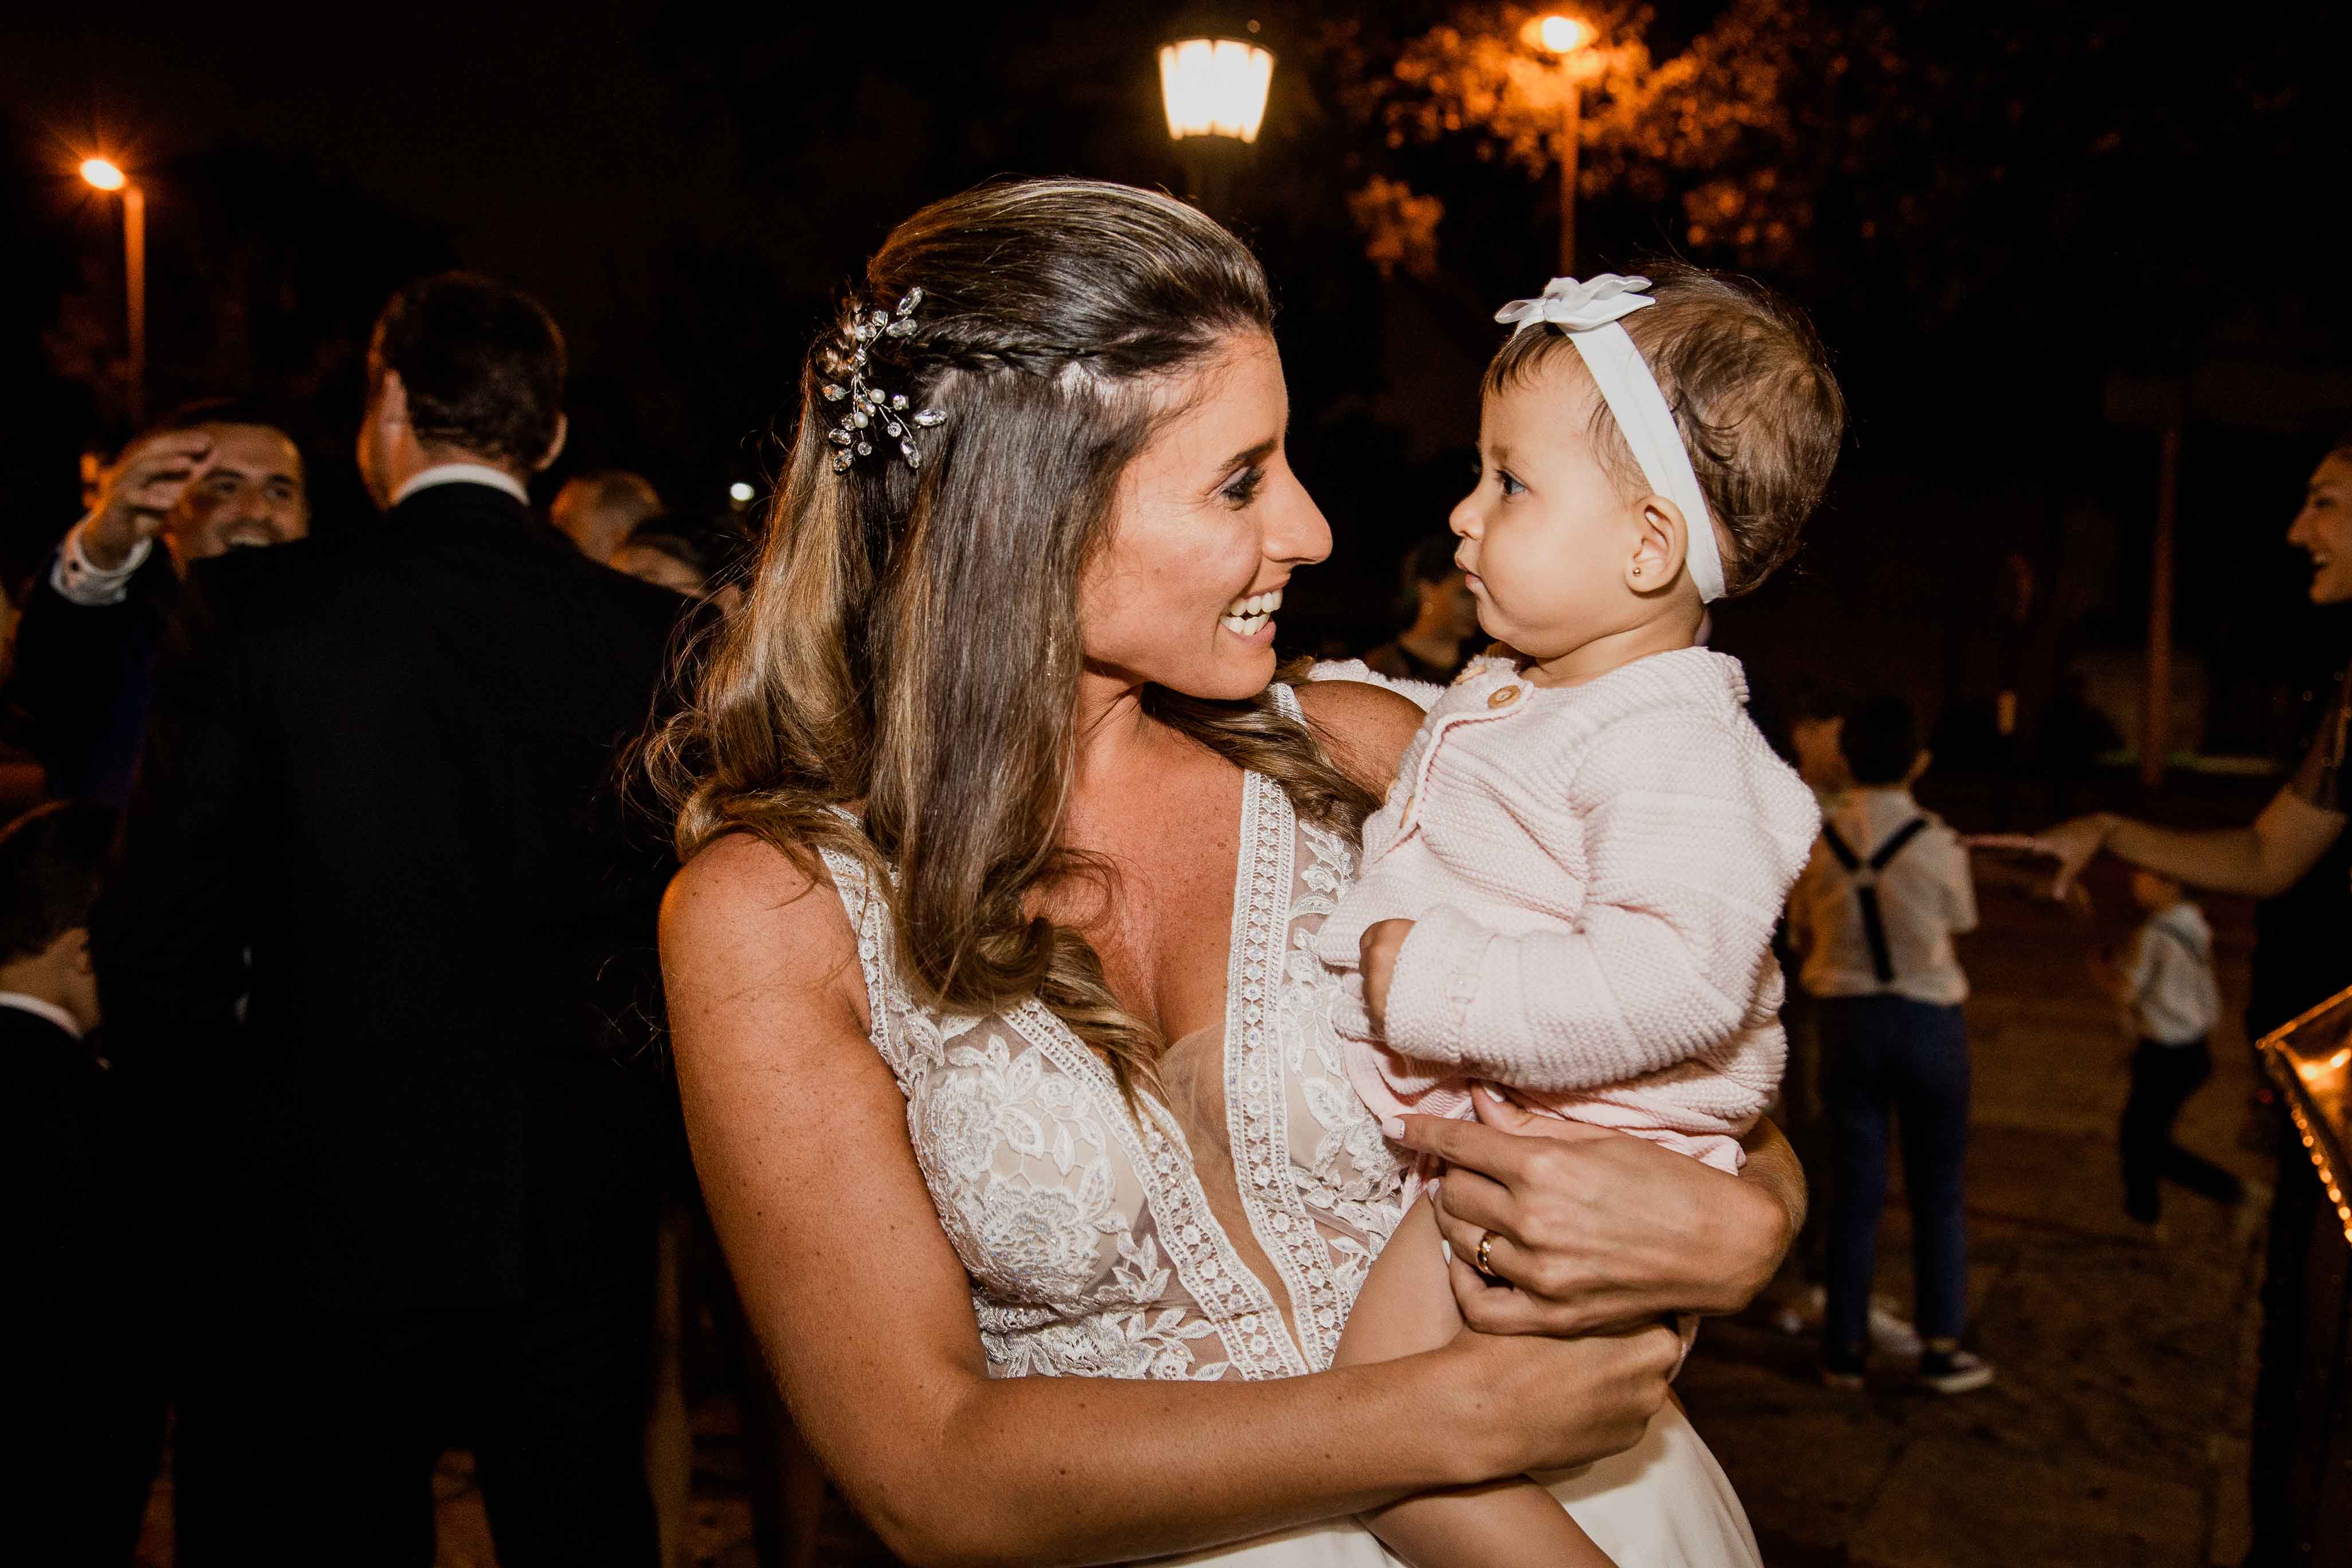 Fotos de la boda de Yoa y Roli en Rosario realizadas por Bucle Fotografias Flor Bosio y Caro Clerici